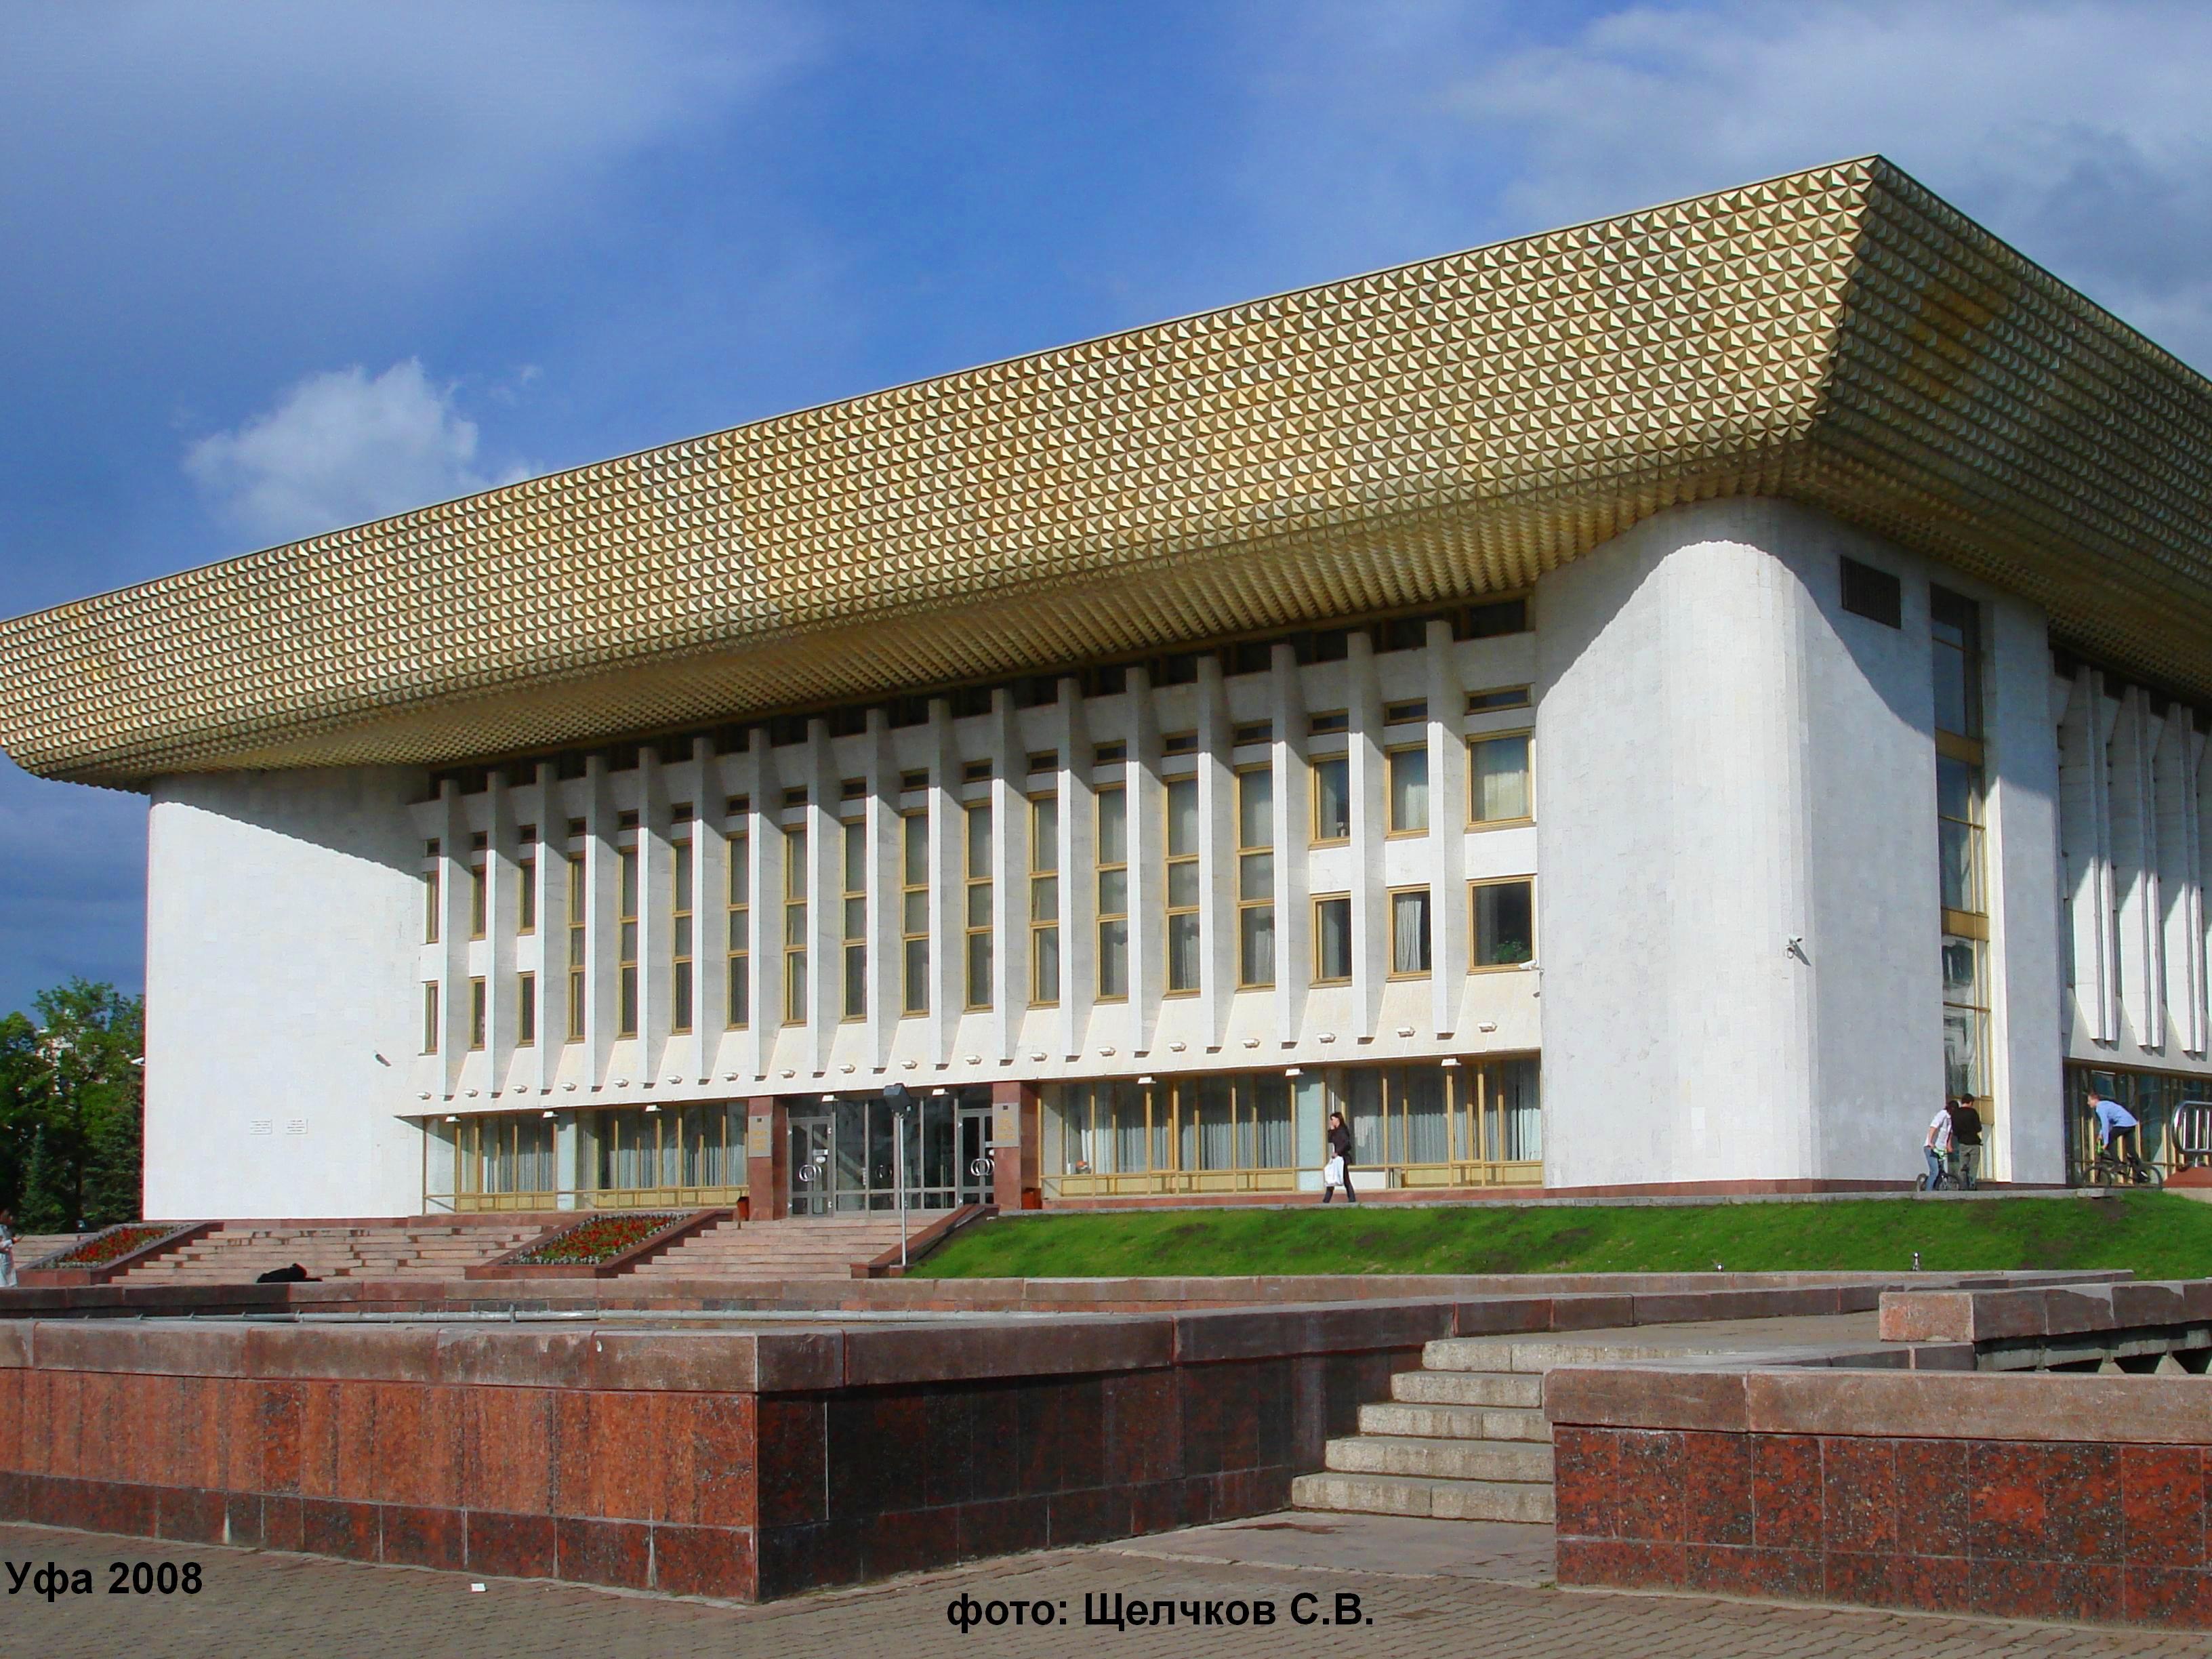 Дворец культуры Уфа